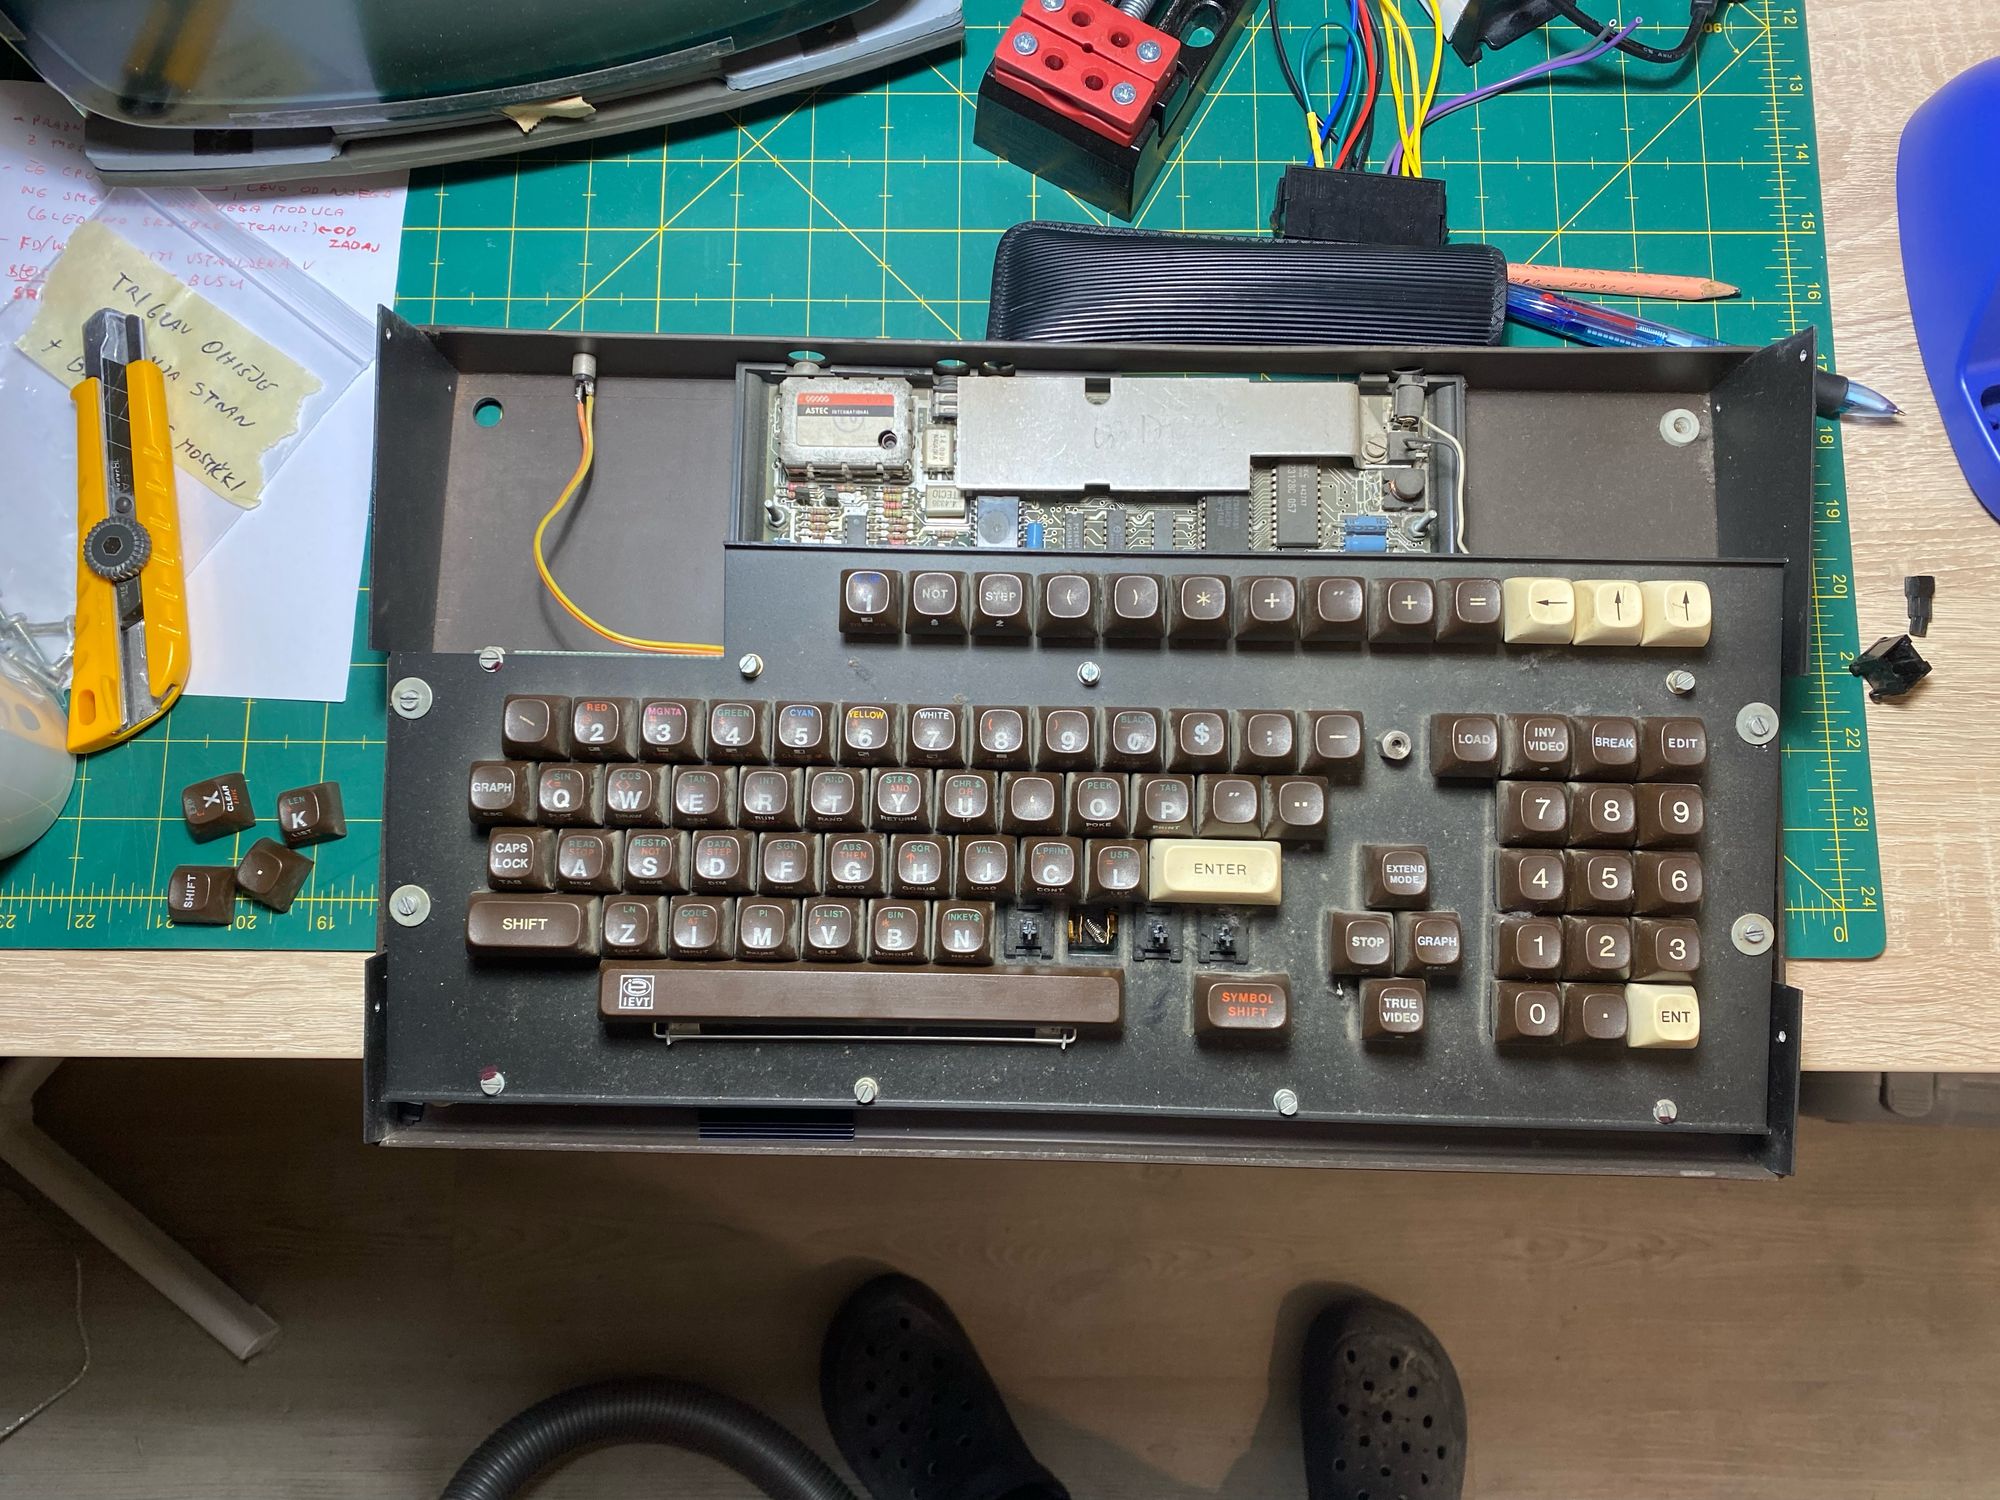 Restoring Ines, a ZX Spectrum Keyboard